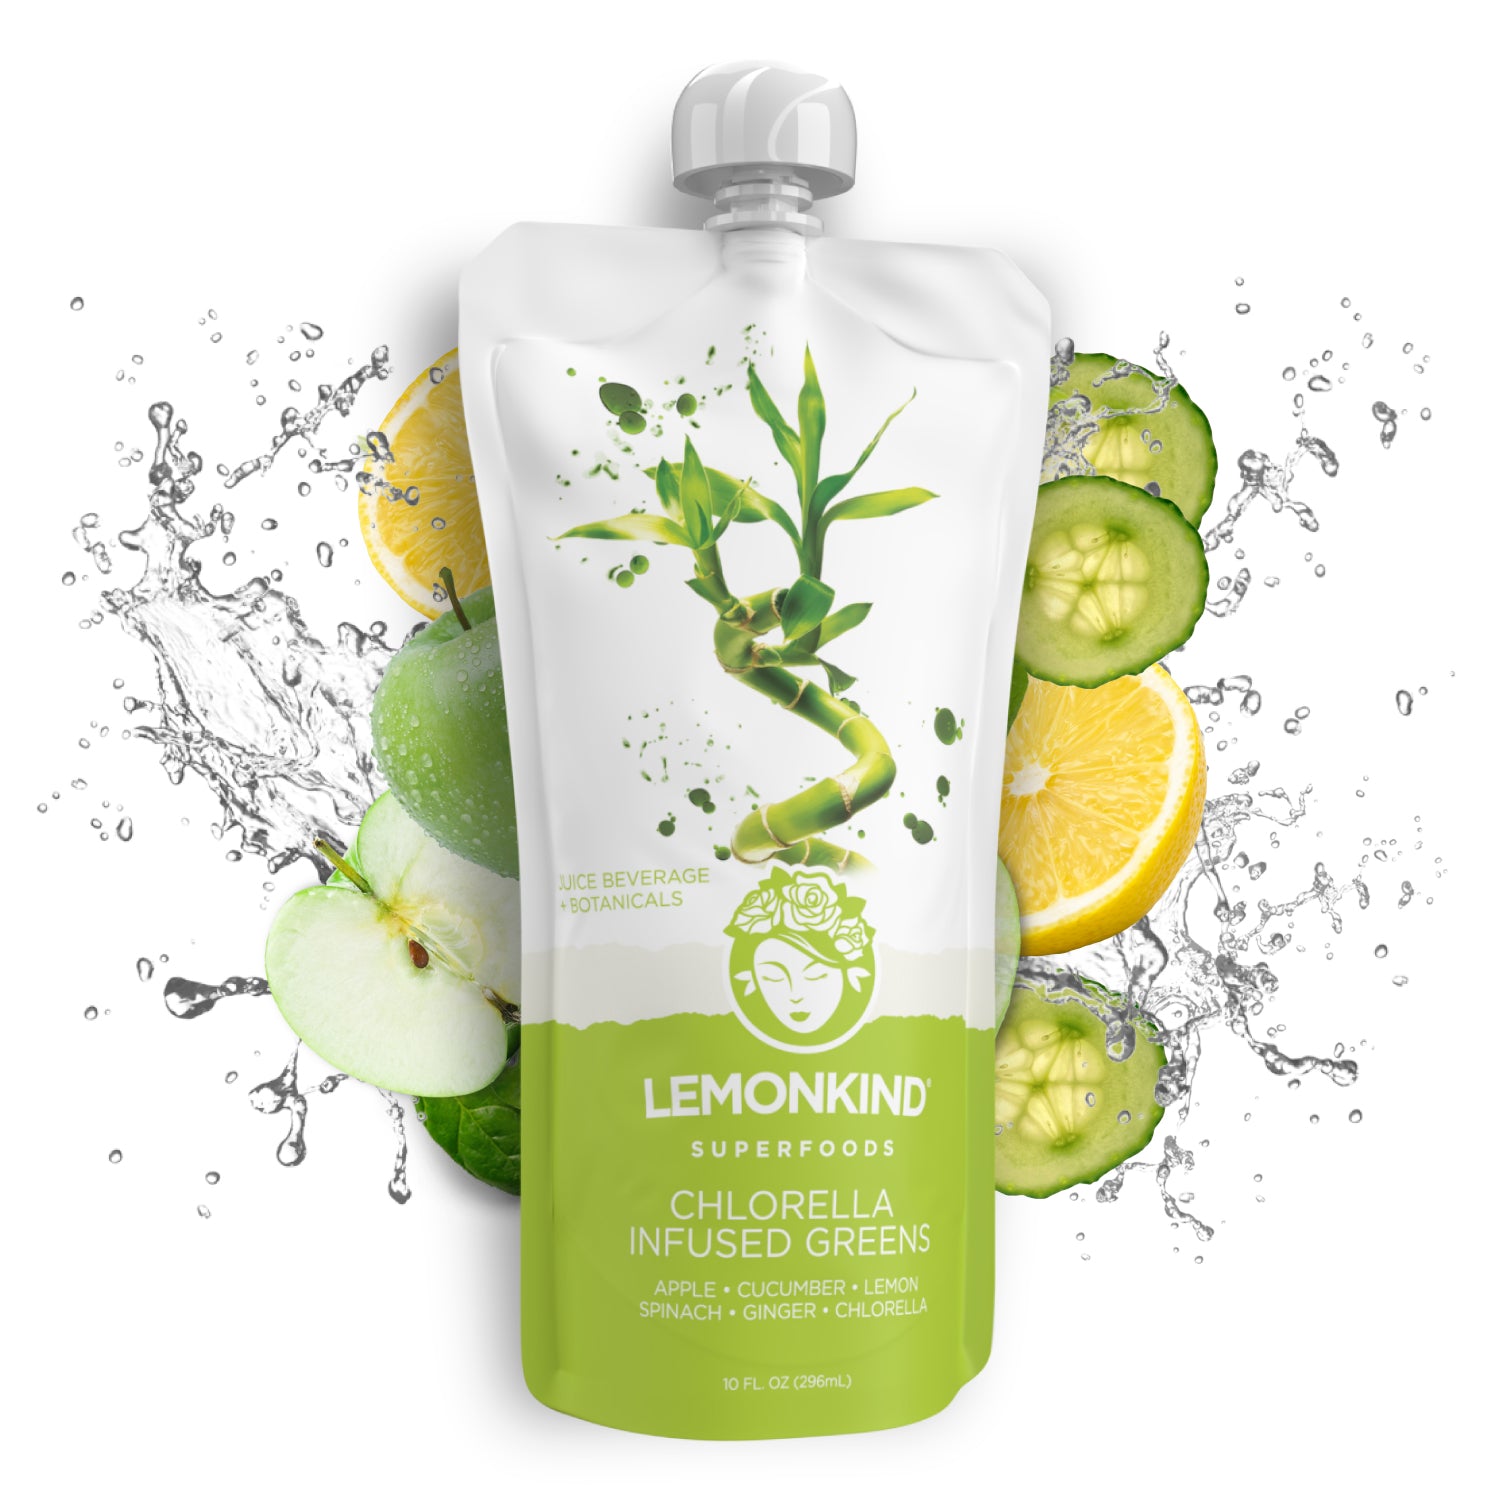 Lemonkind's Chlorella Infused Greens Juice